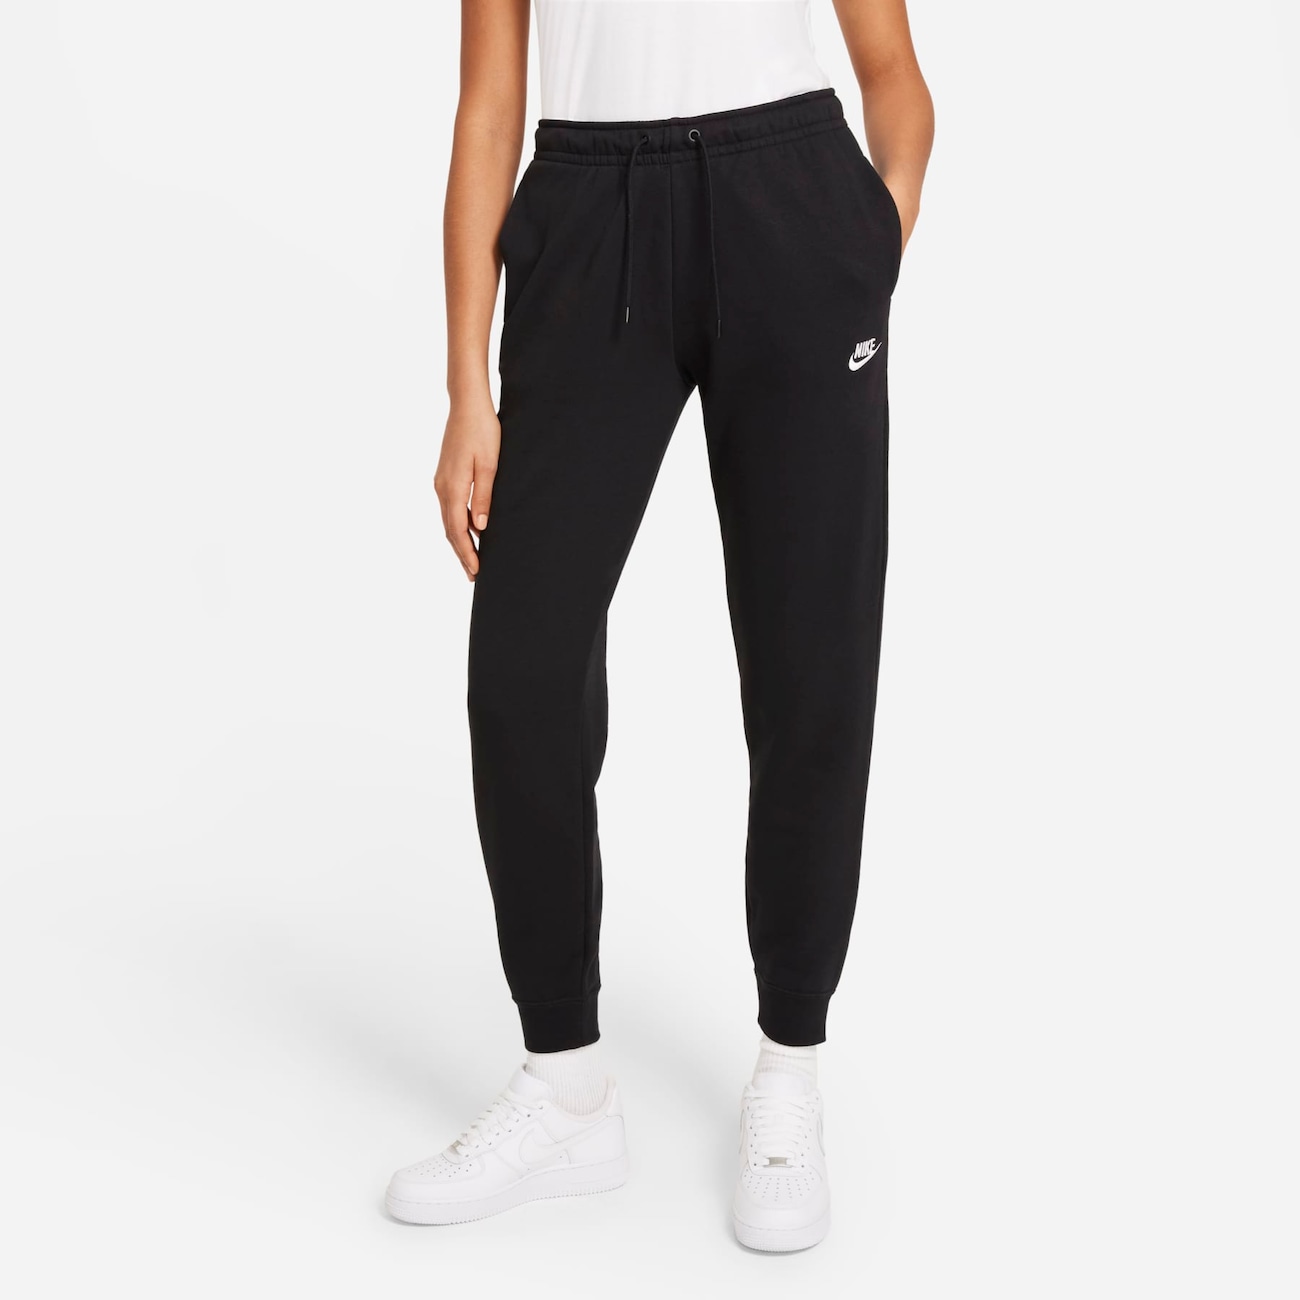 Calça Nike Sportswear Essential Feminina